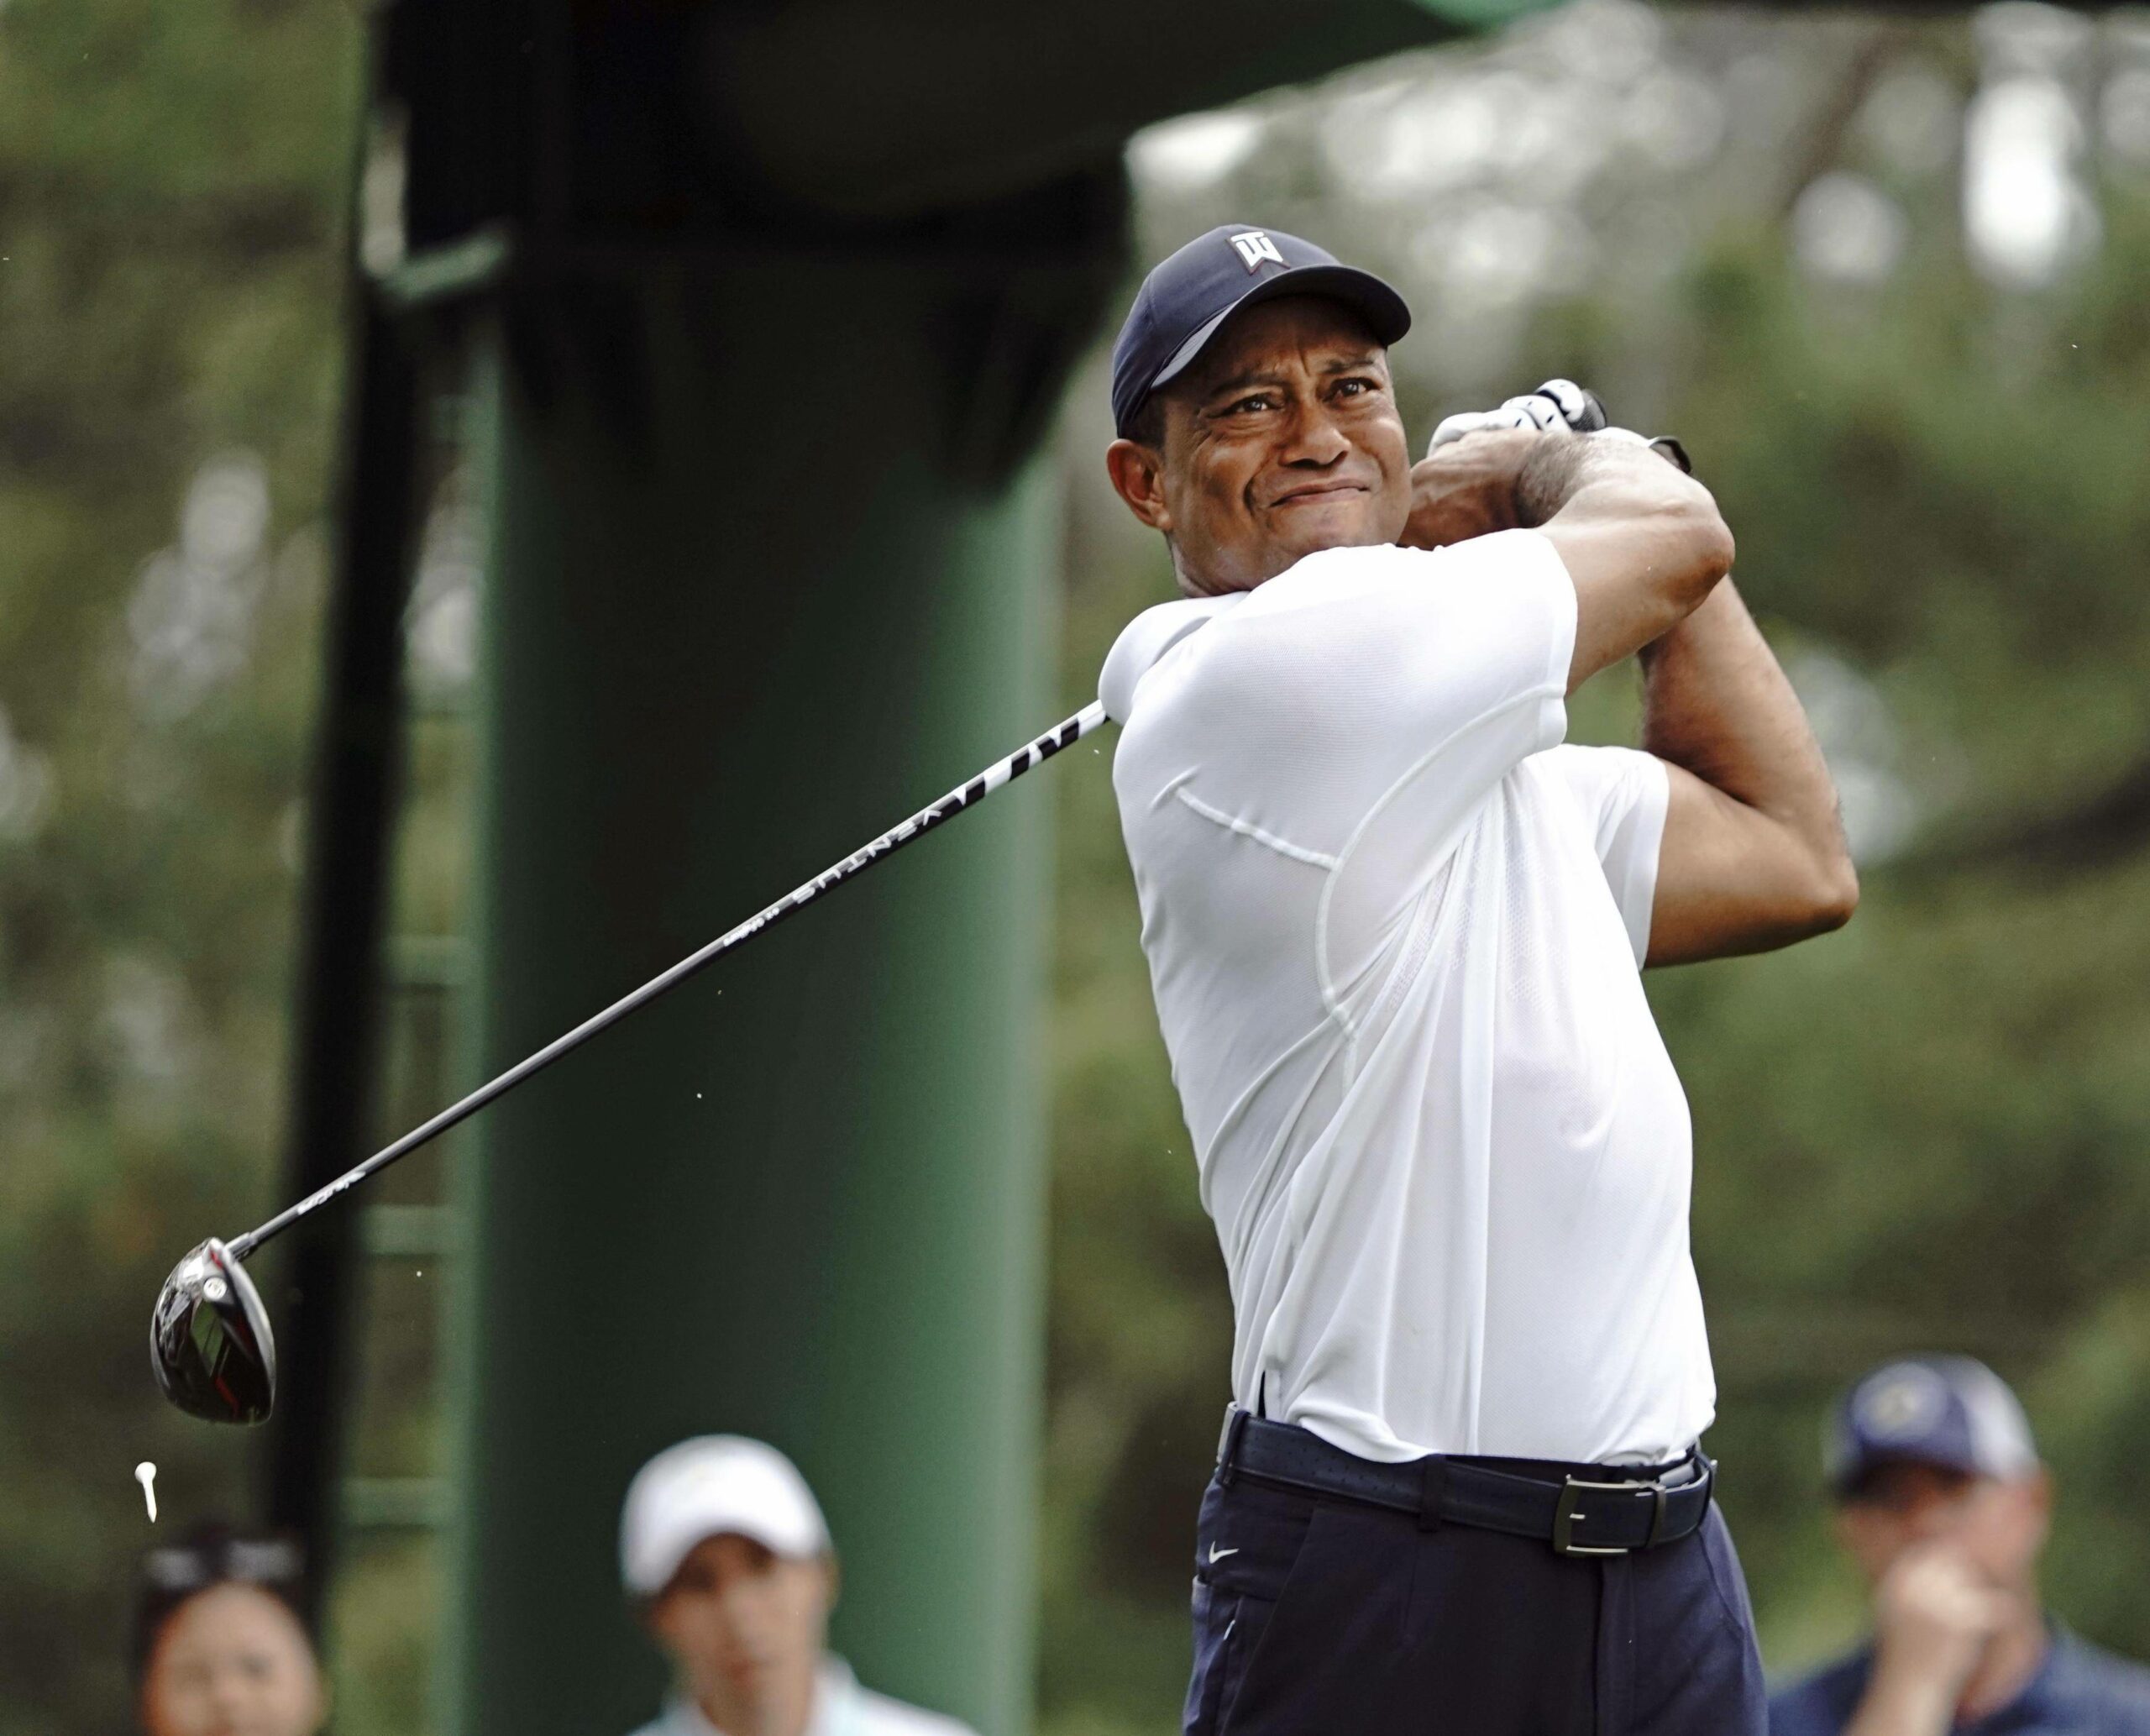 Tiger Woods beim Schlagen mit unzufriedenem Gesichtsausdruck